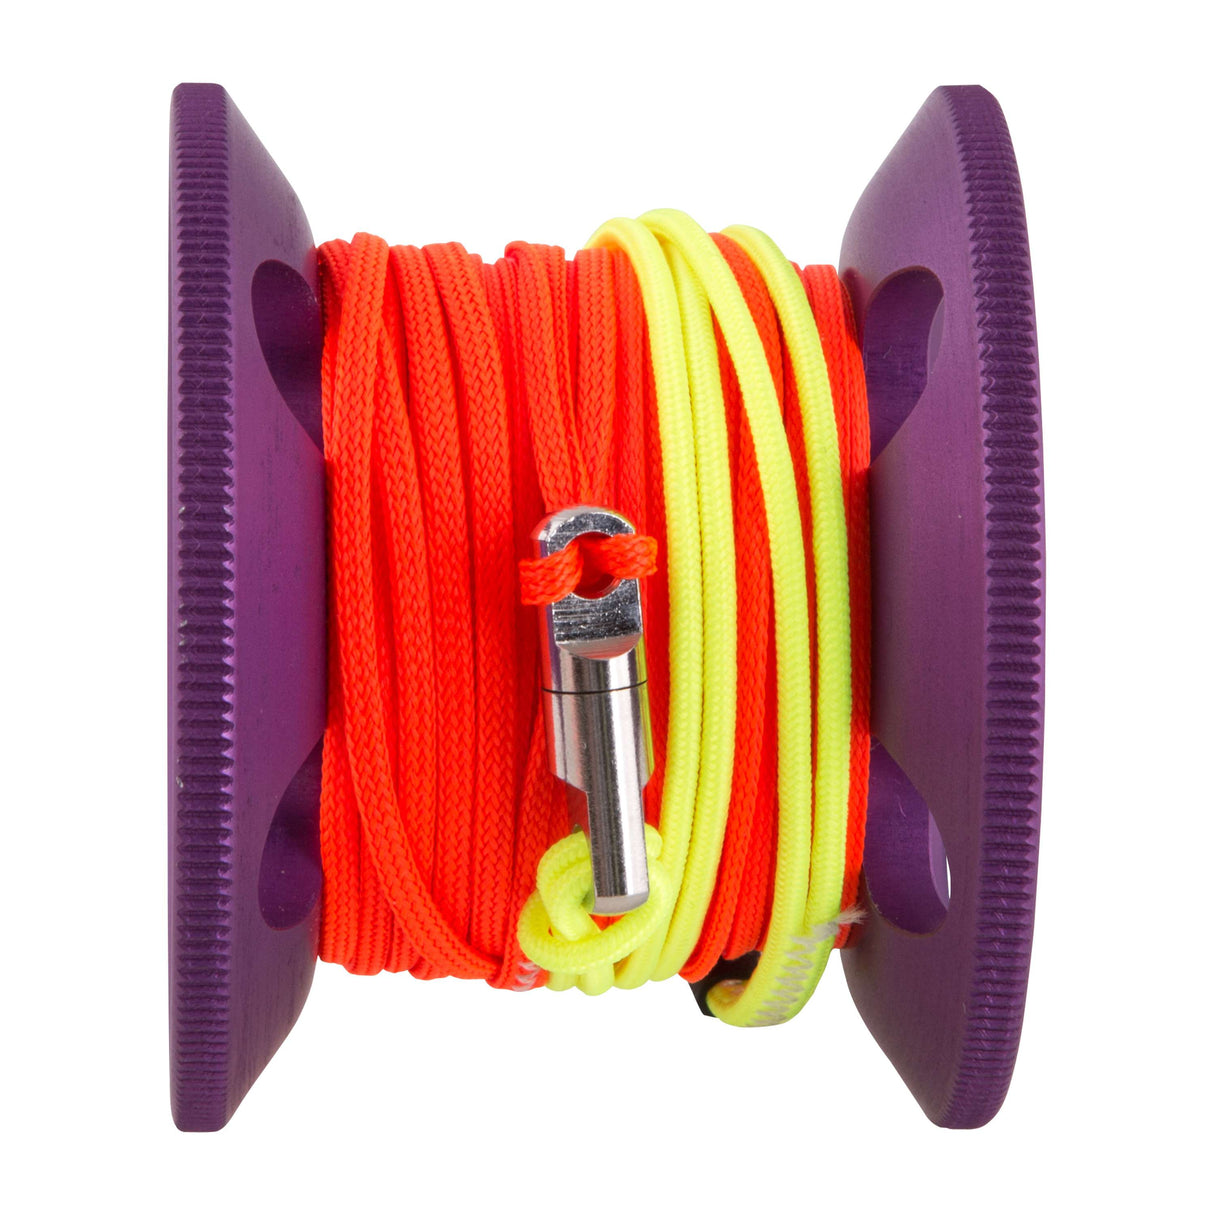 Apeks 15M Lifeline Spool Purple/Bright Orange